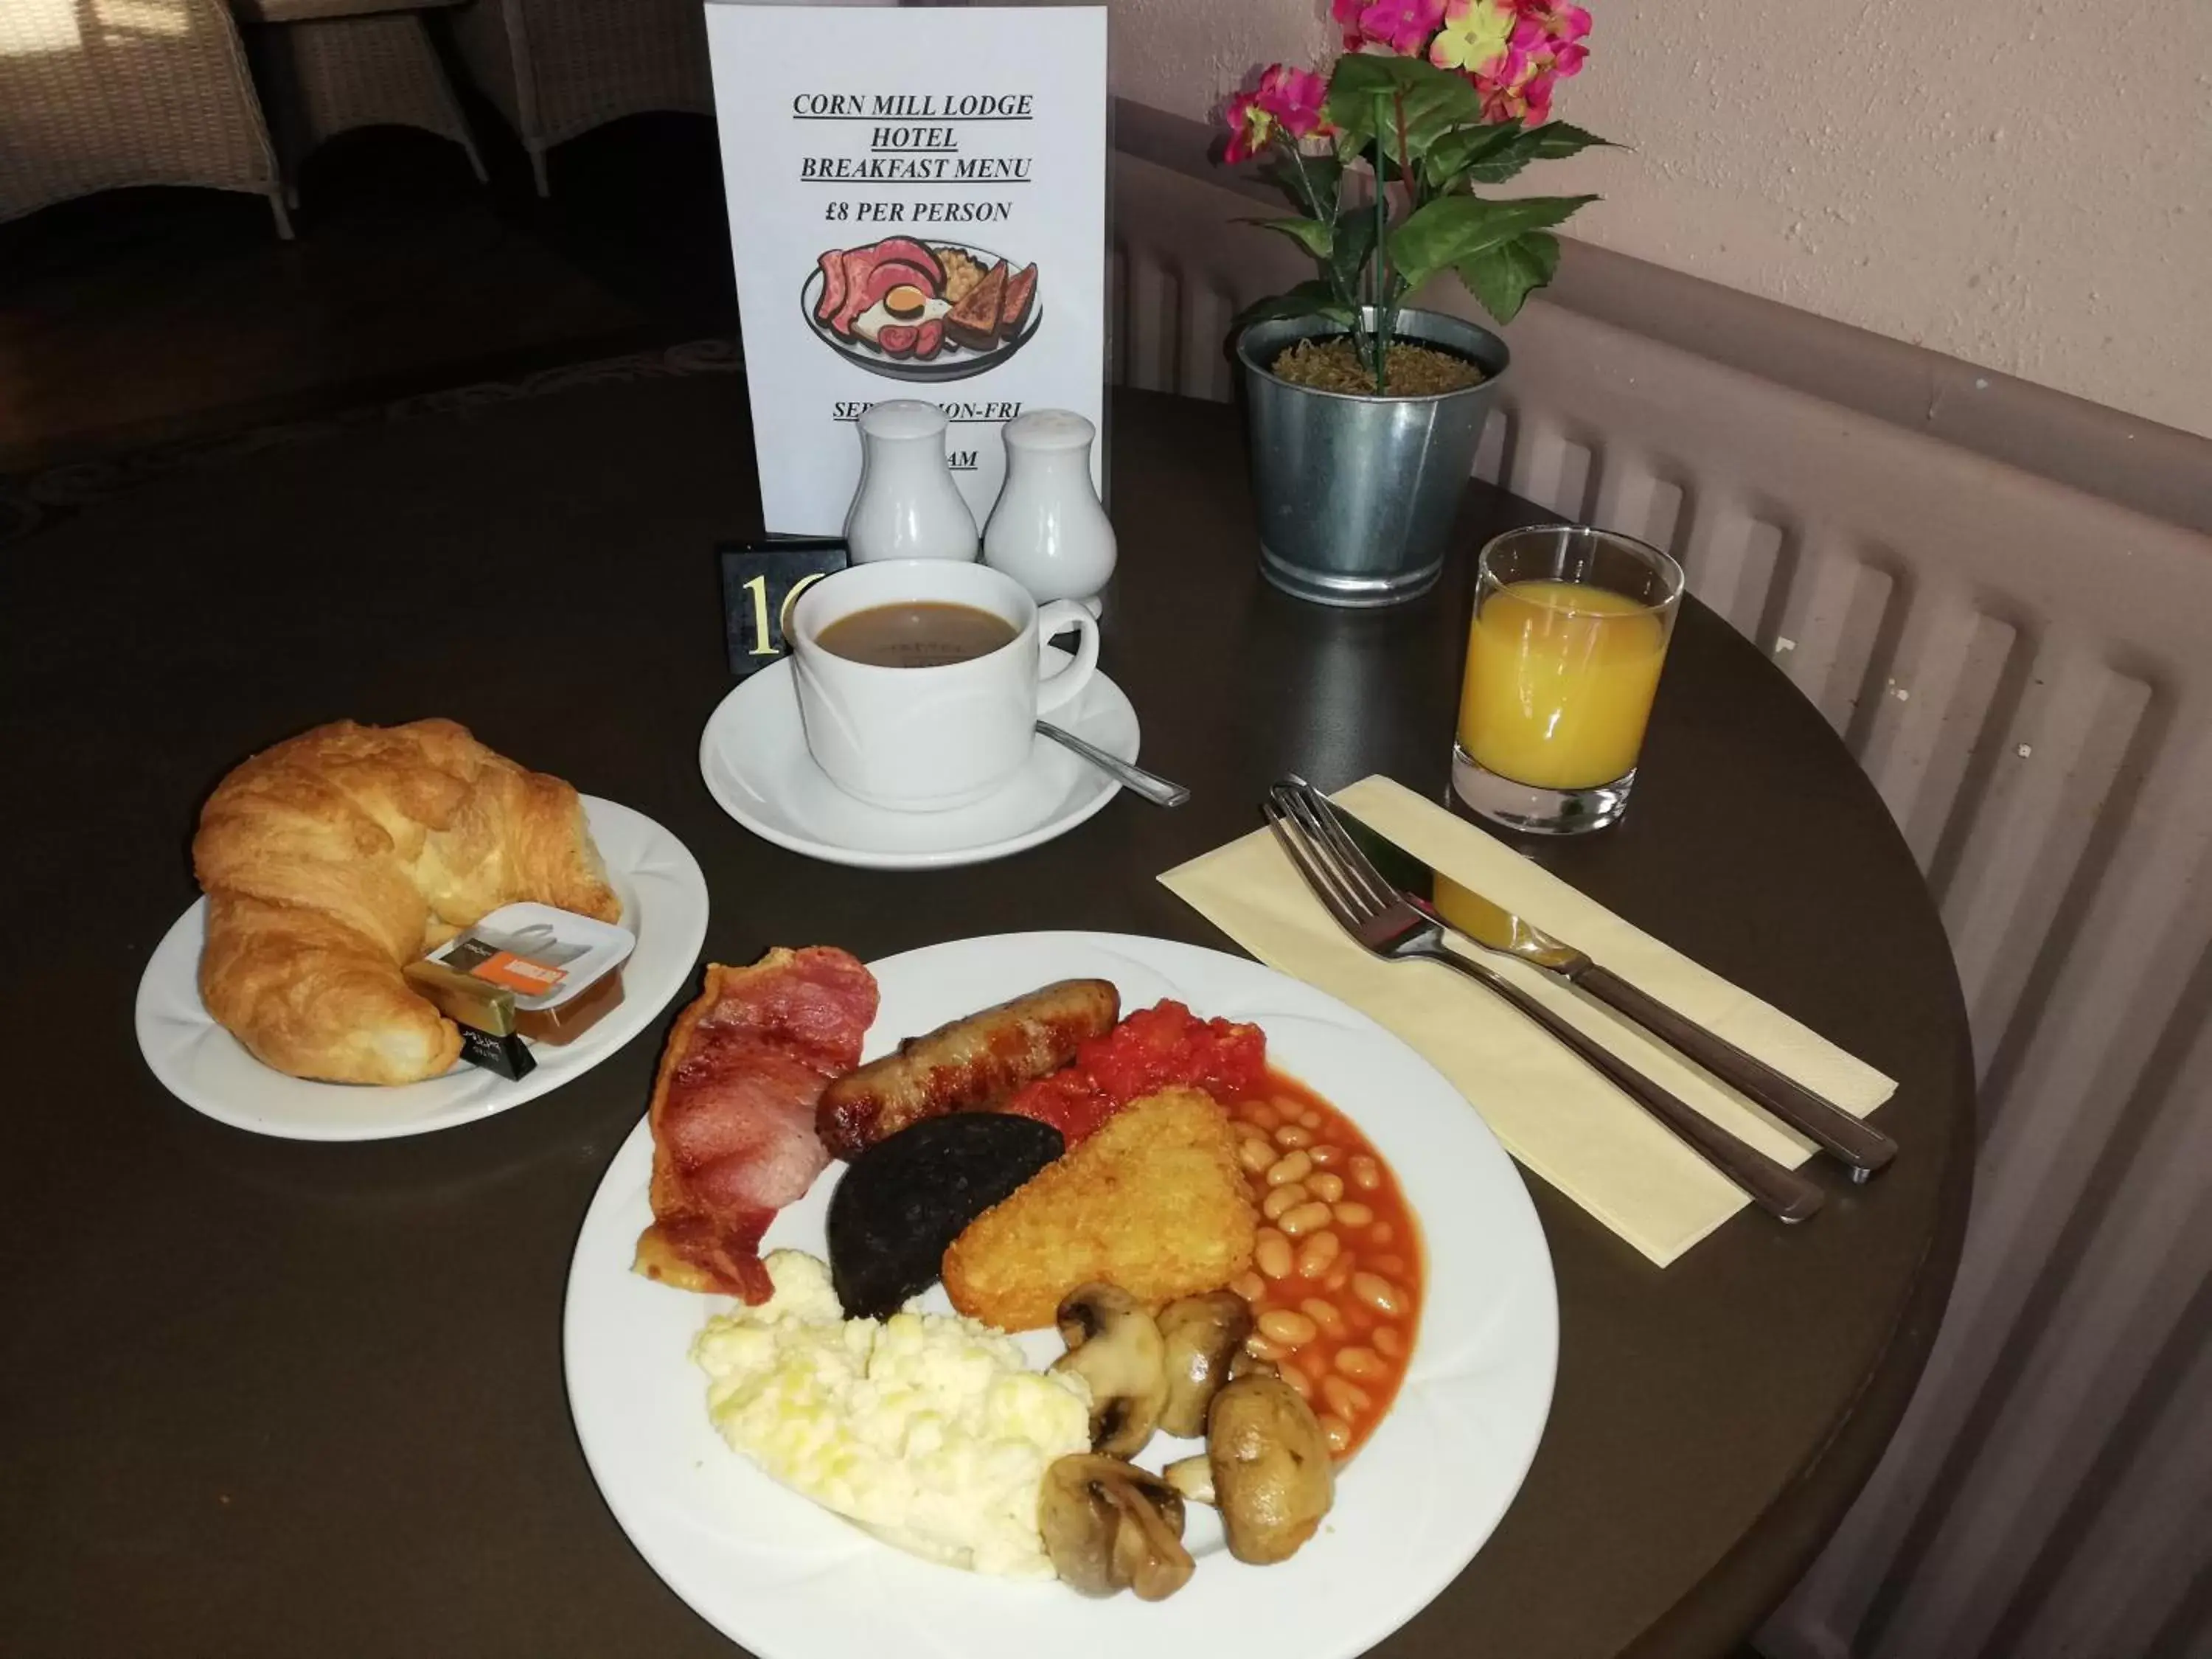 Breakfast in Corn Mill Lodge Hotel